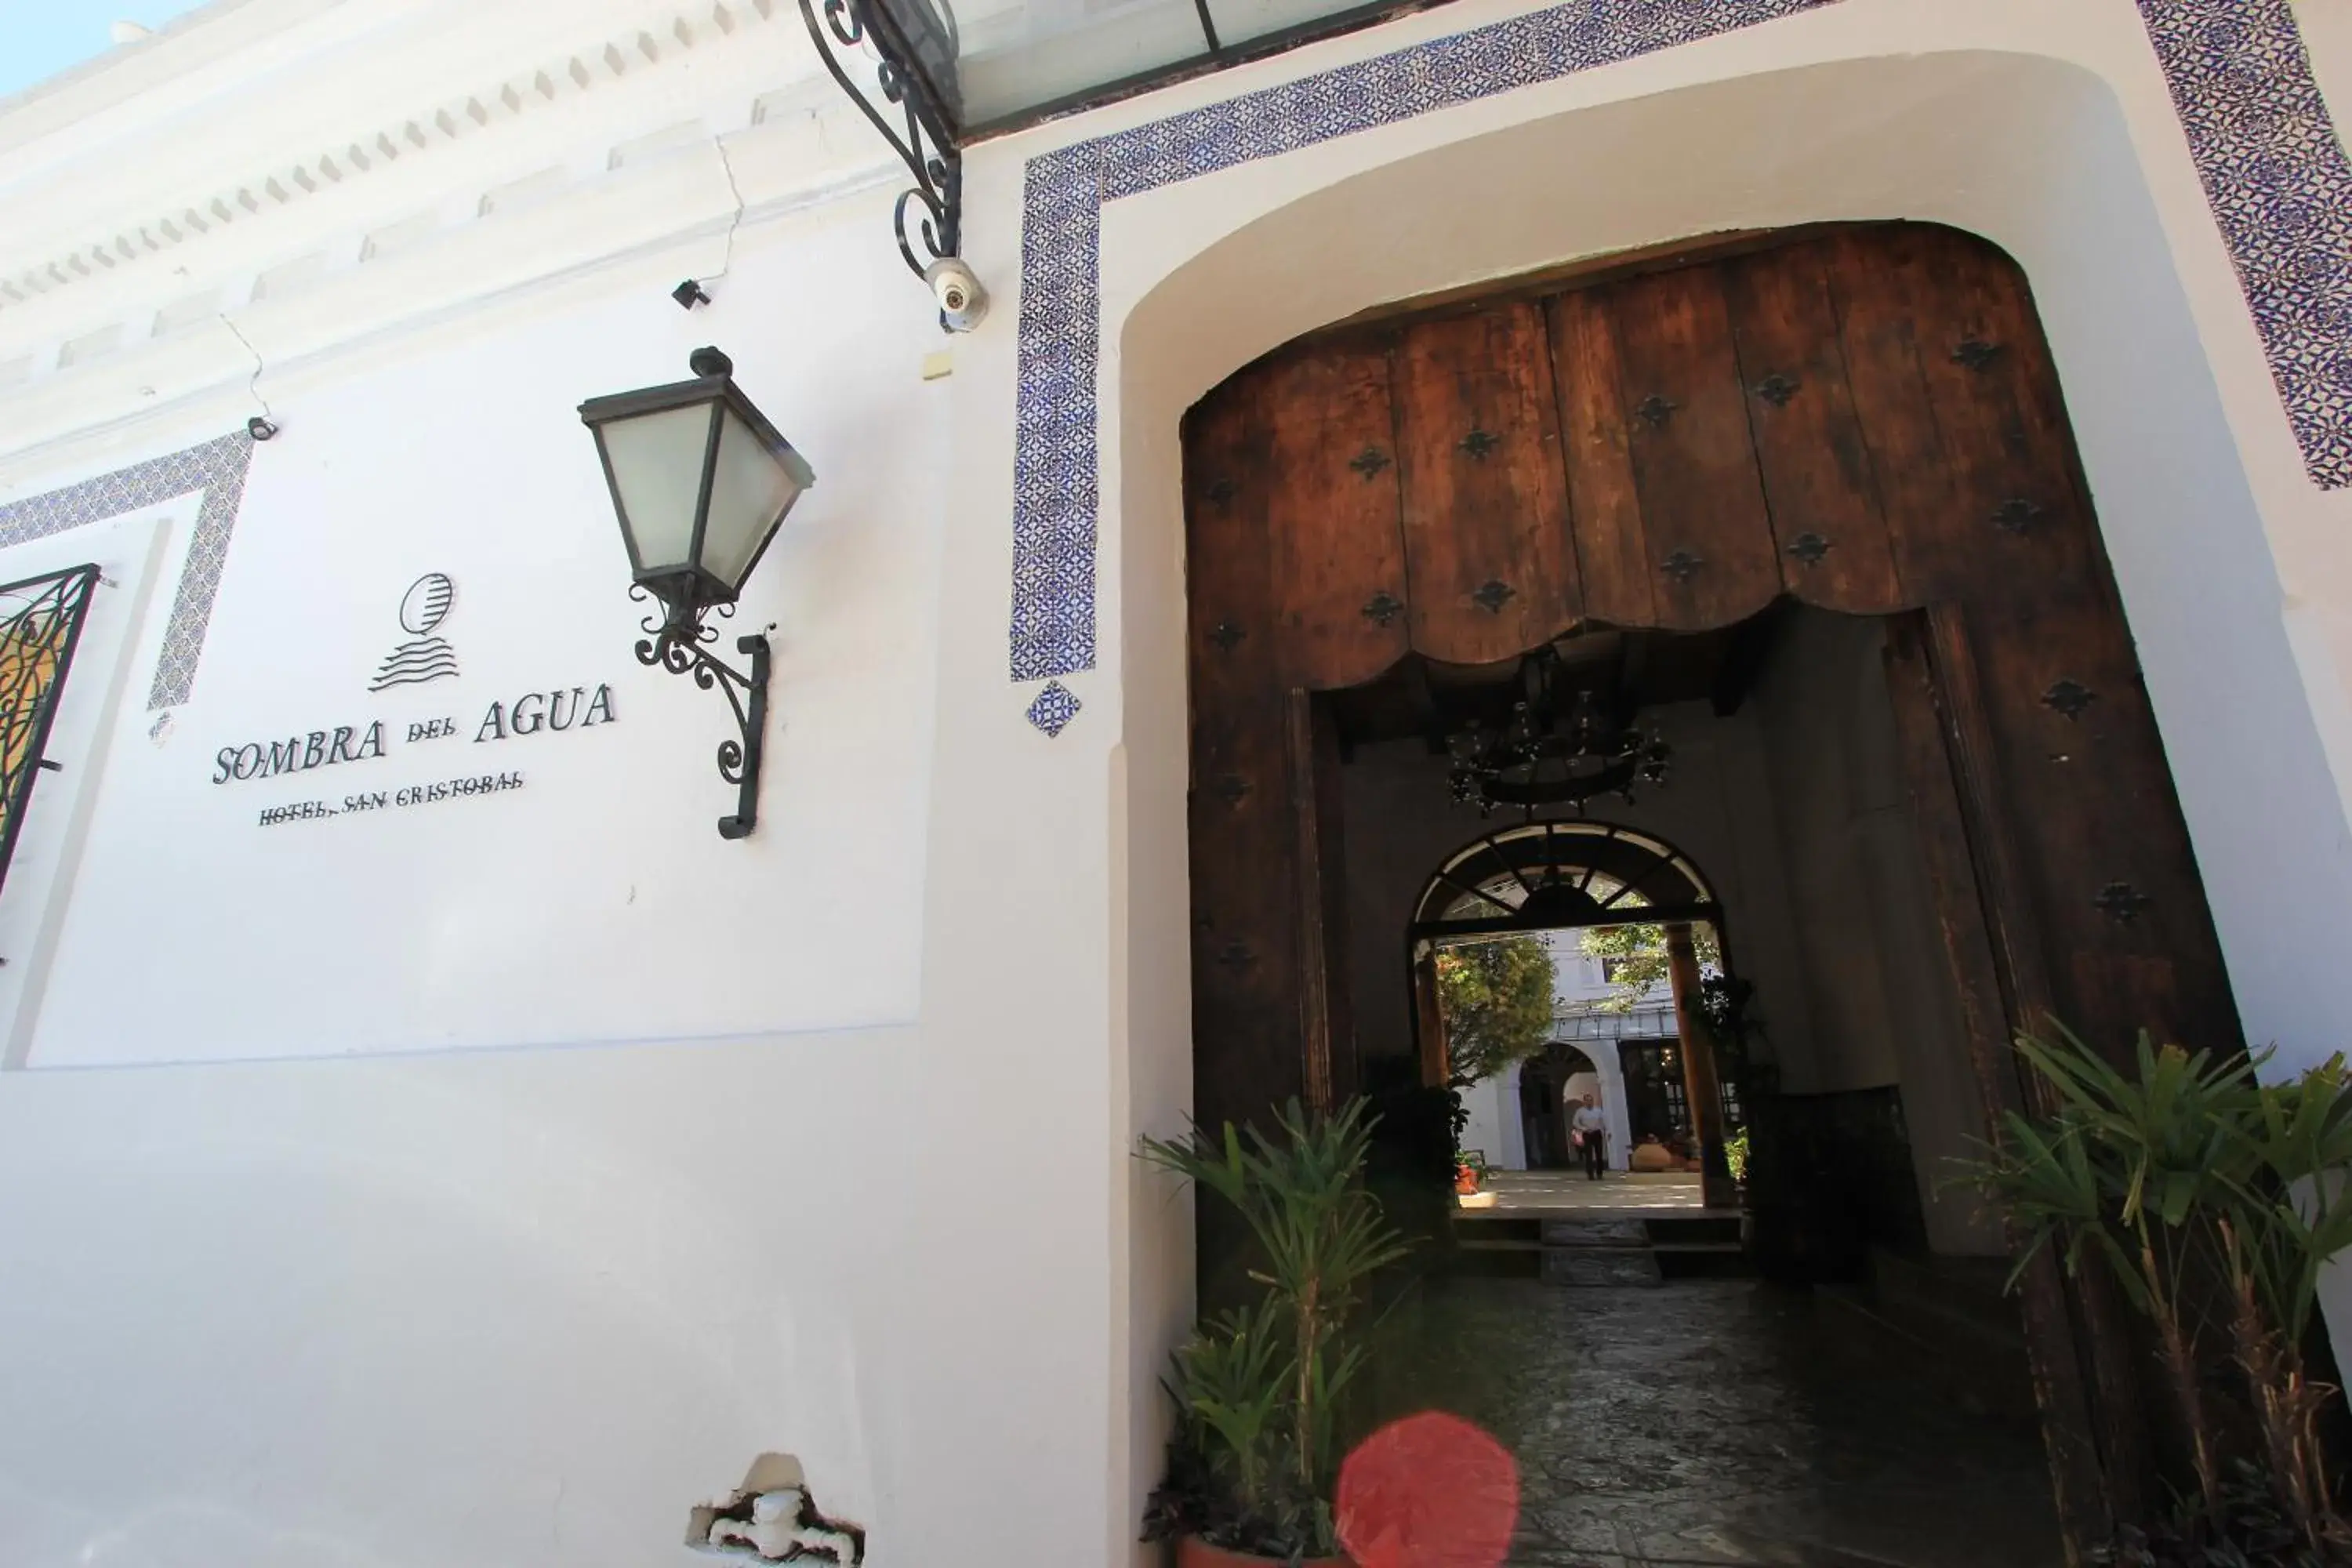 Facade/entrance in Sombra del Agua